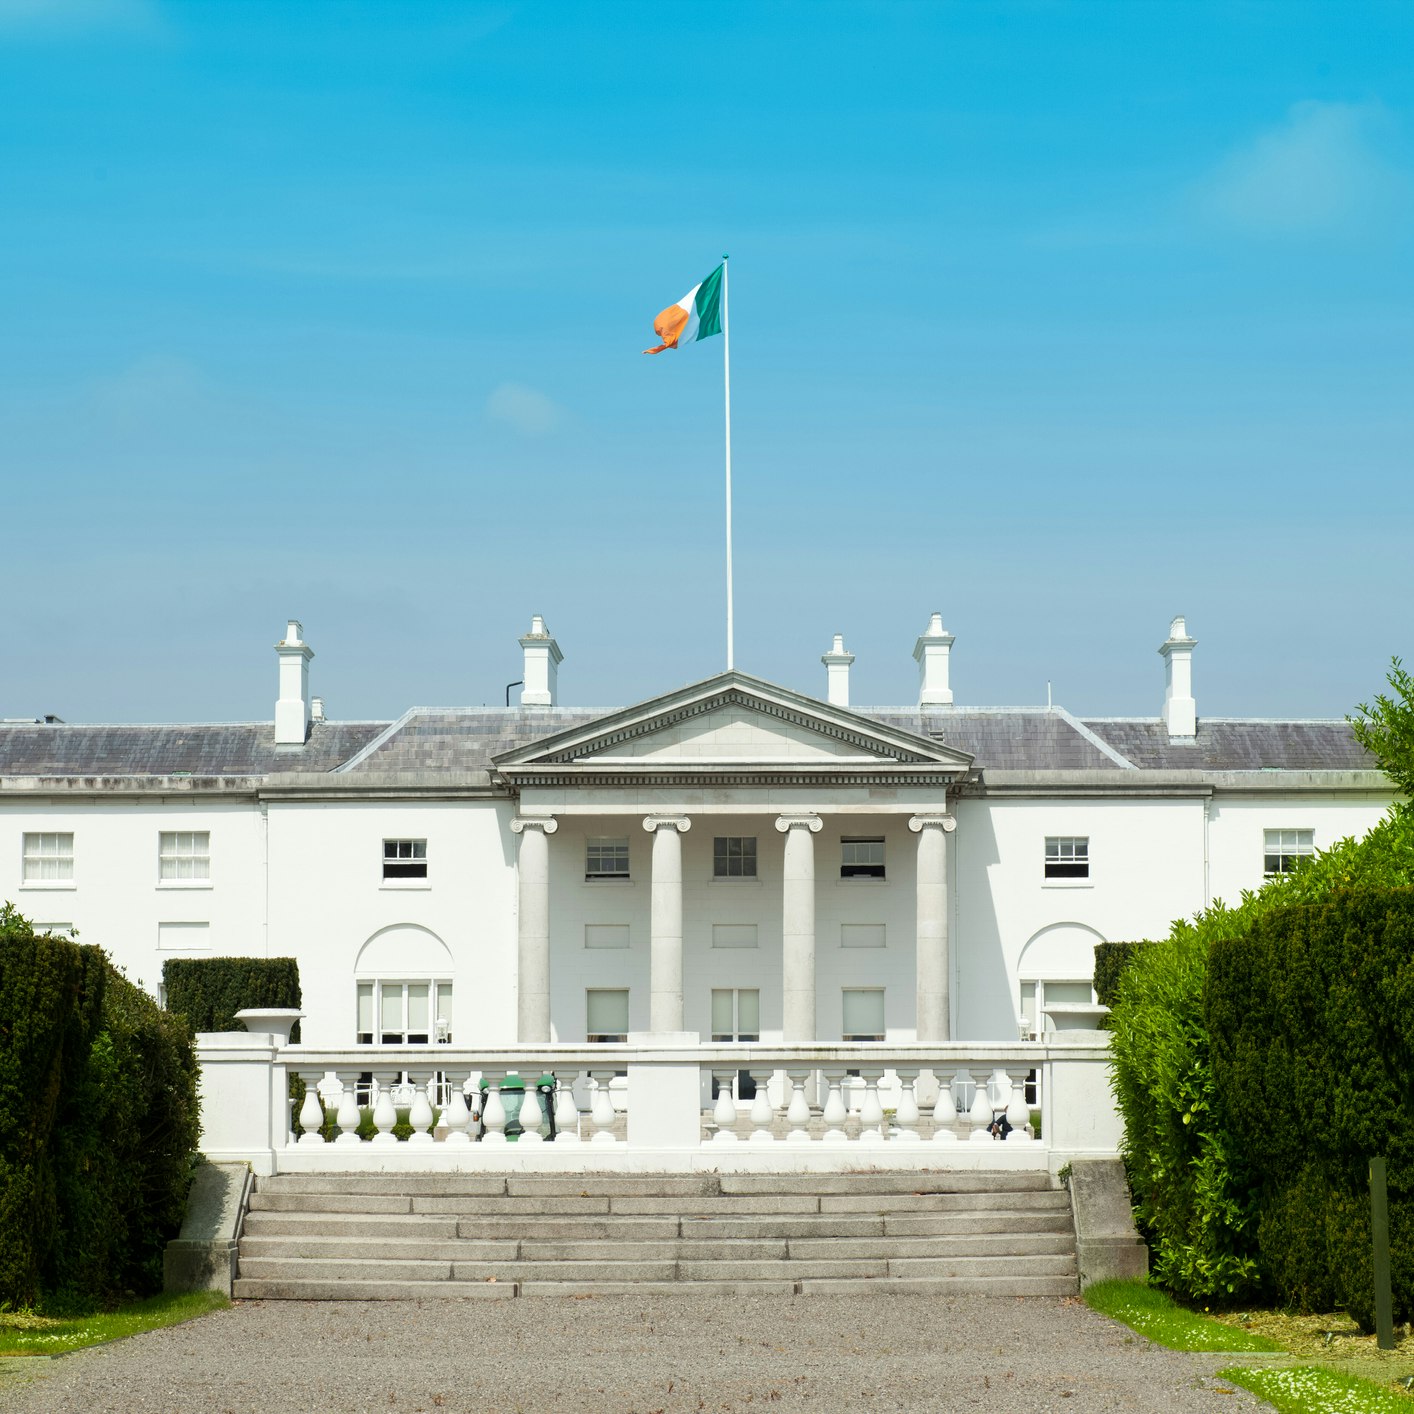 President's residence in Dublin.